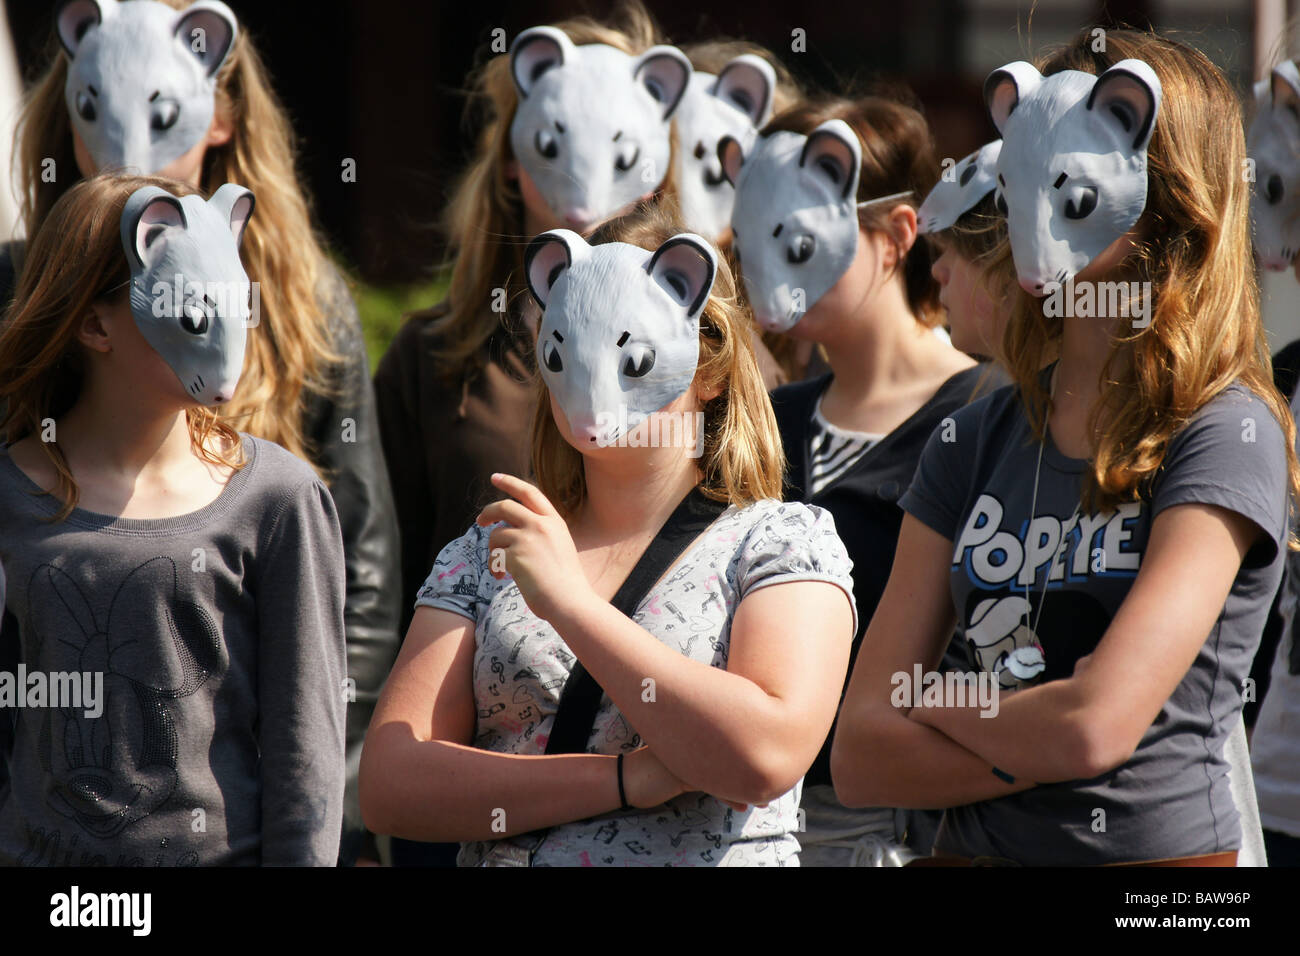 El grupo de niñas adolescentes, las mujeres vestidas con ratones máscara ocultar la identidad en la calle en la ciudad de Rotterdam, Países Bajos Foto de stock